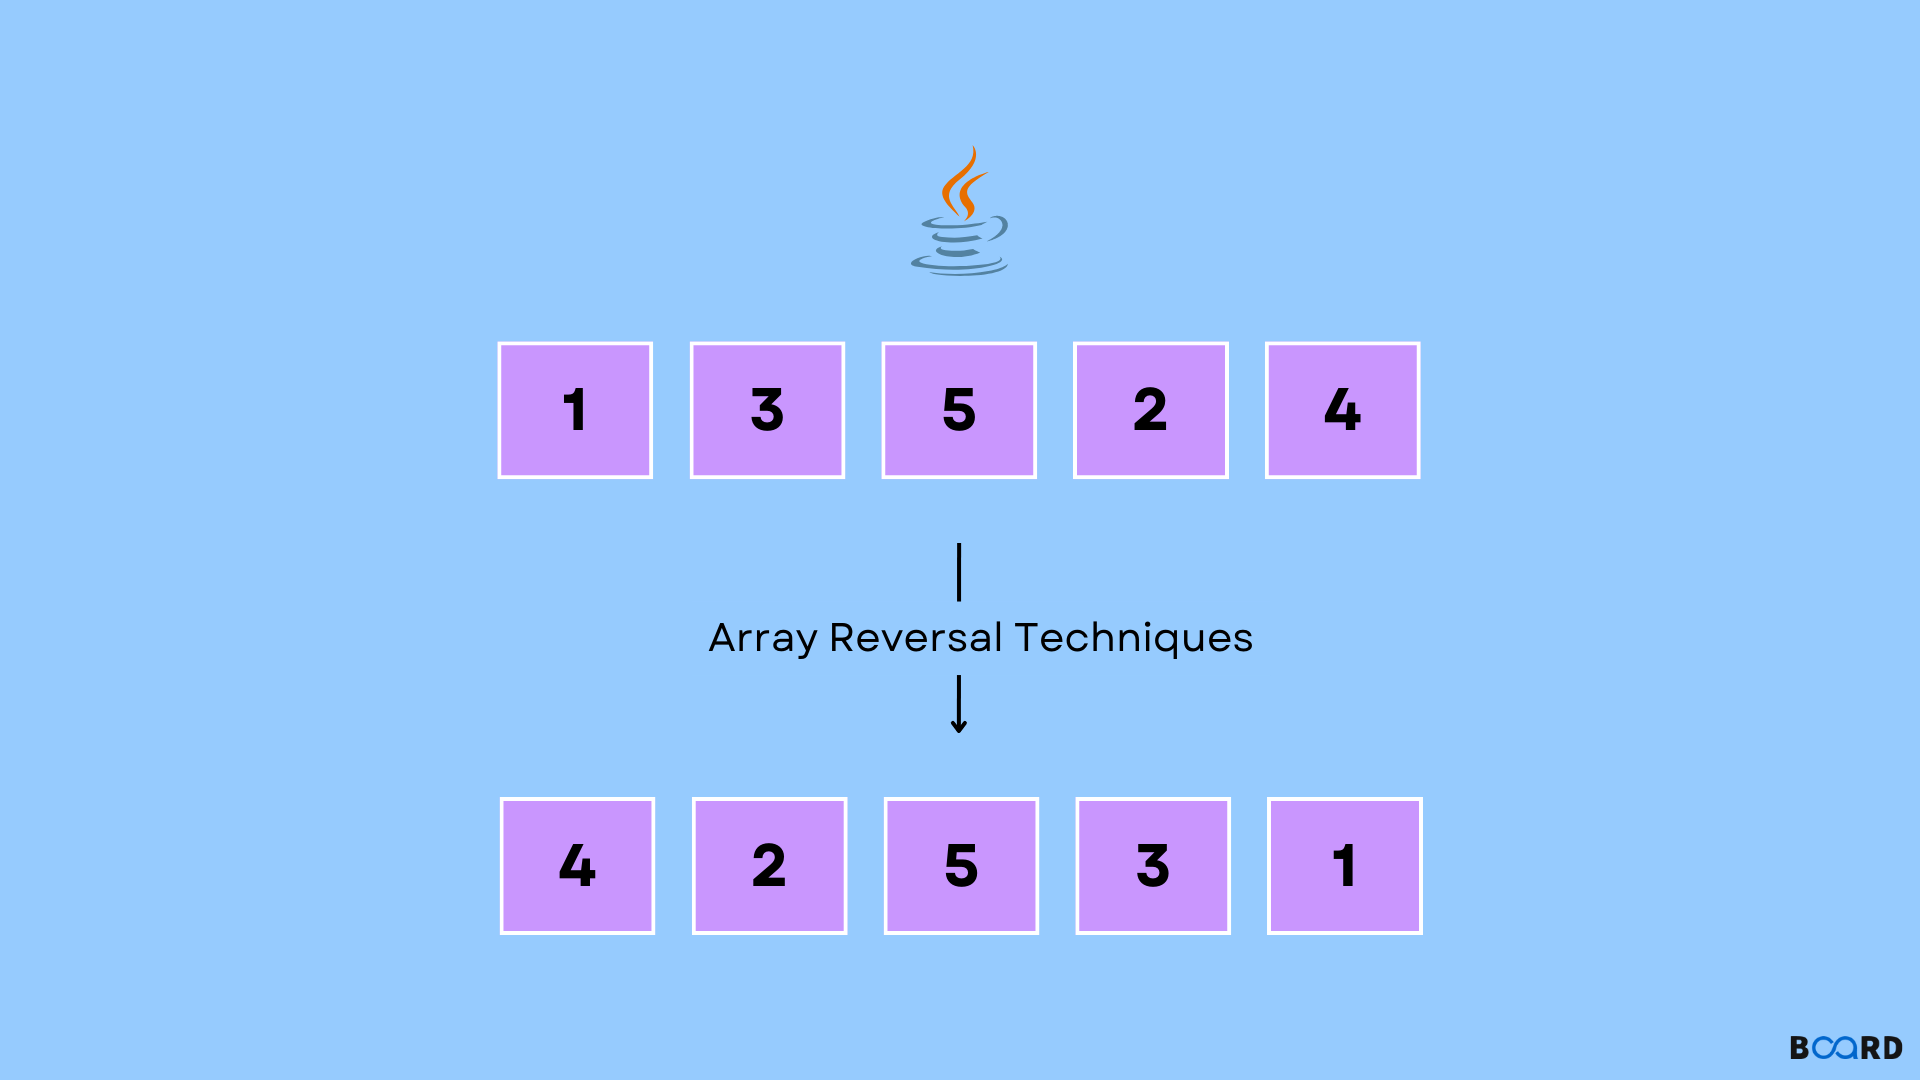 Reverse an Array in Java